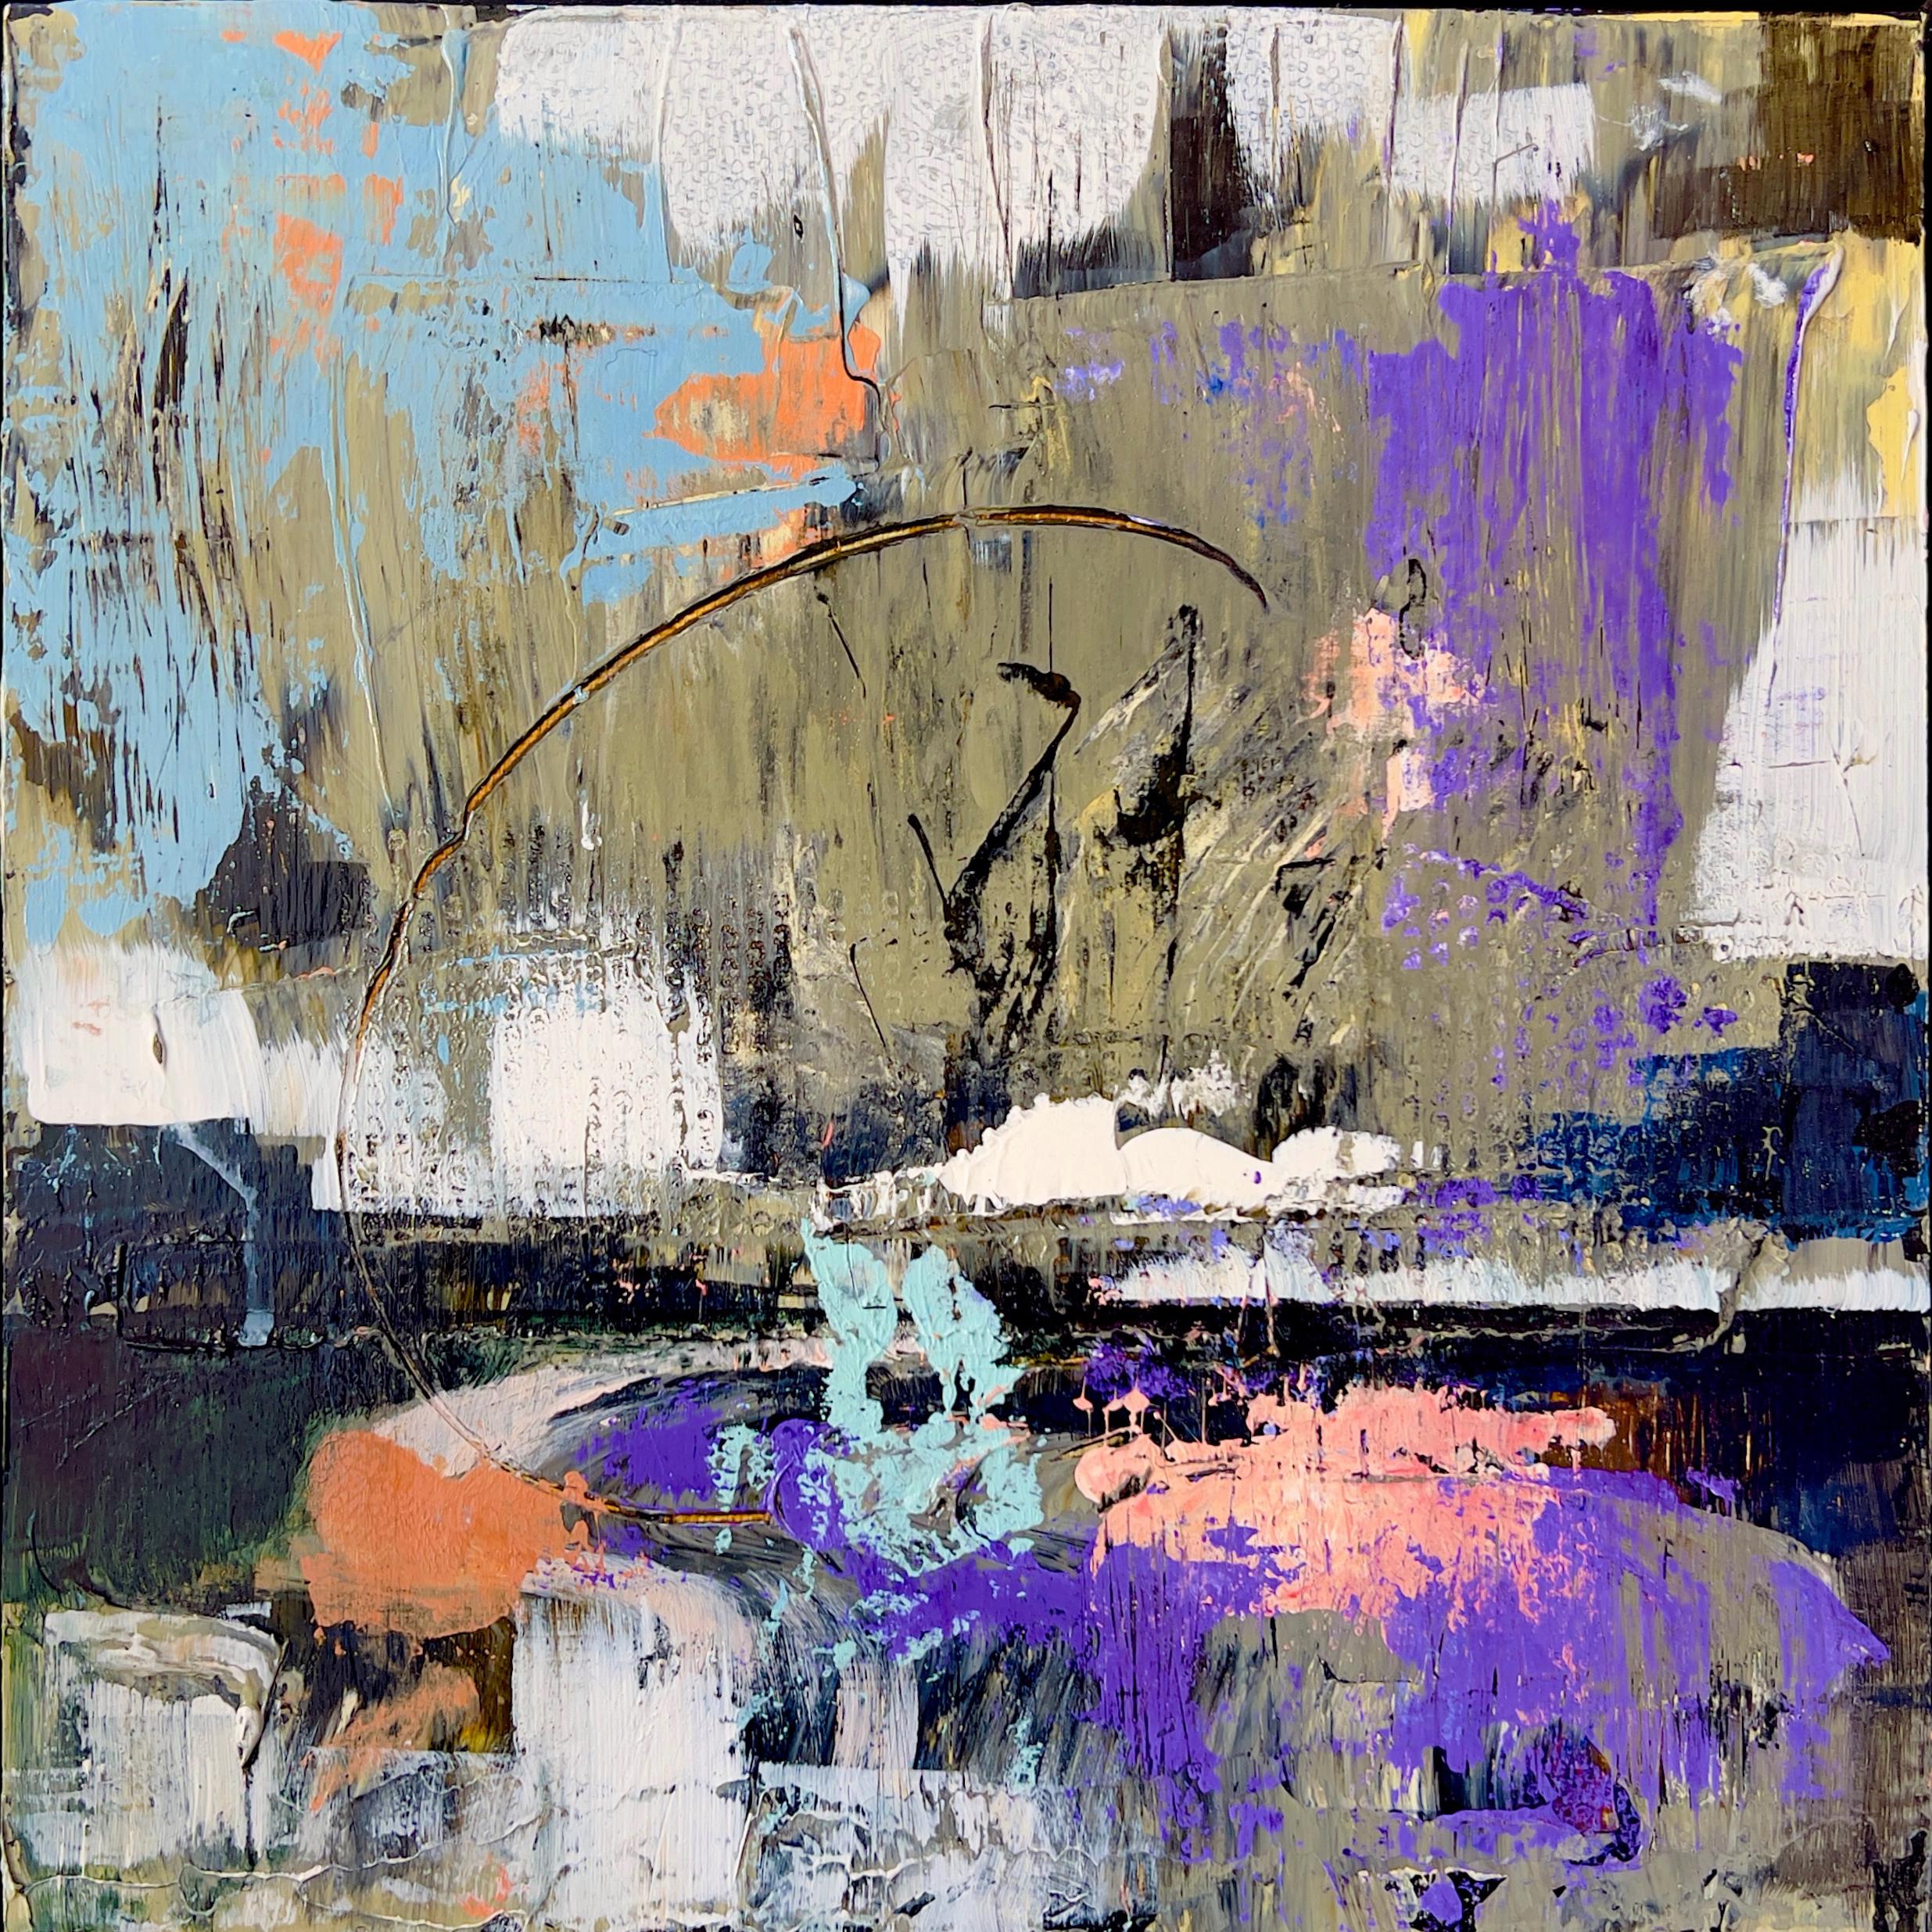 Soirée au lac n° 3 - Expressionnisme abstrait Painting par Chaya Vance